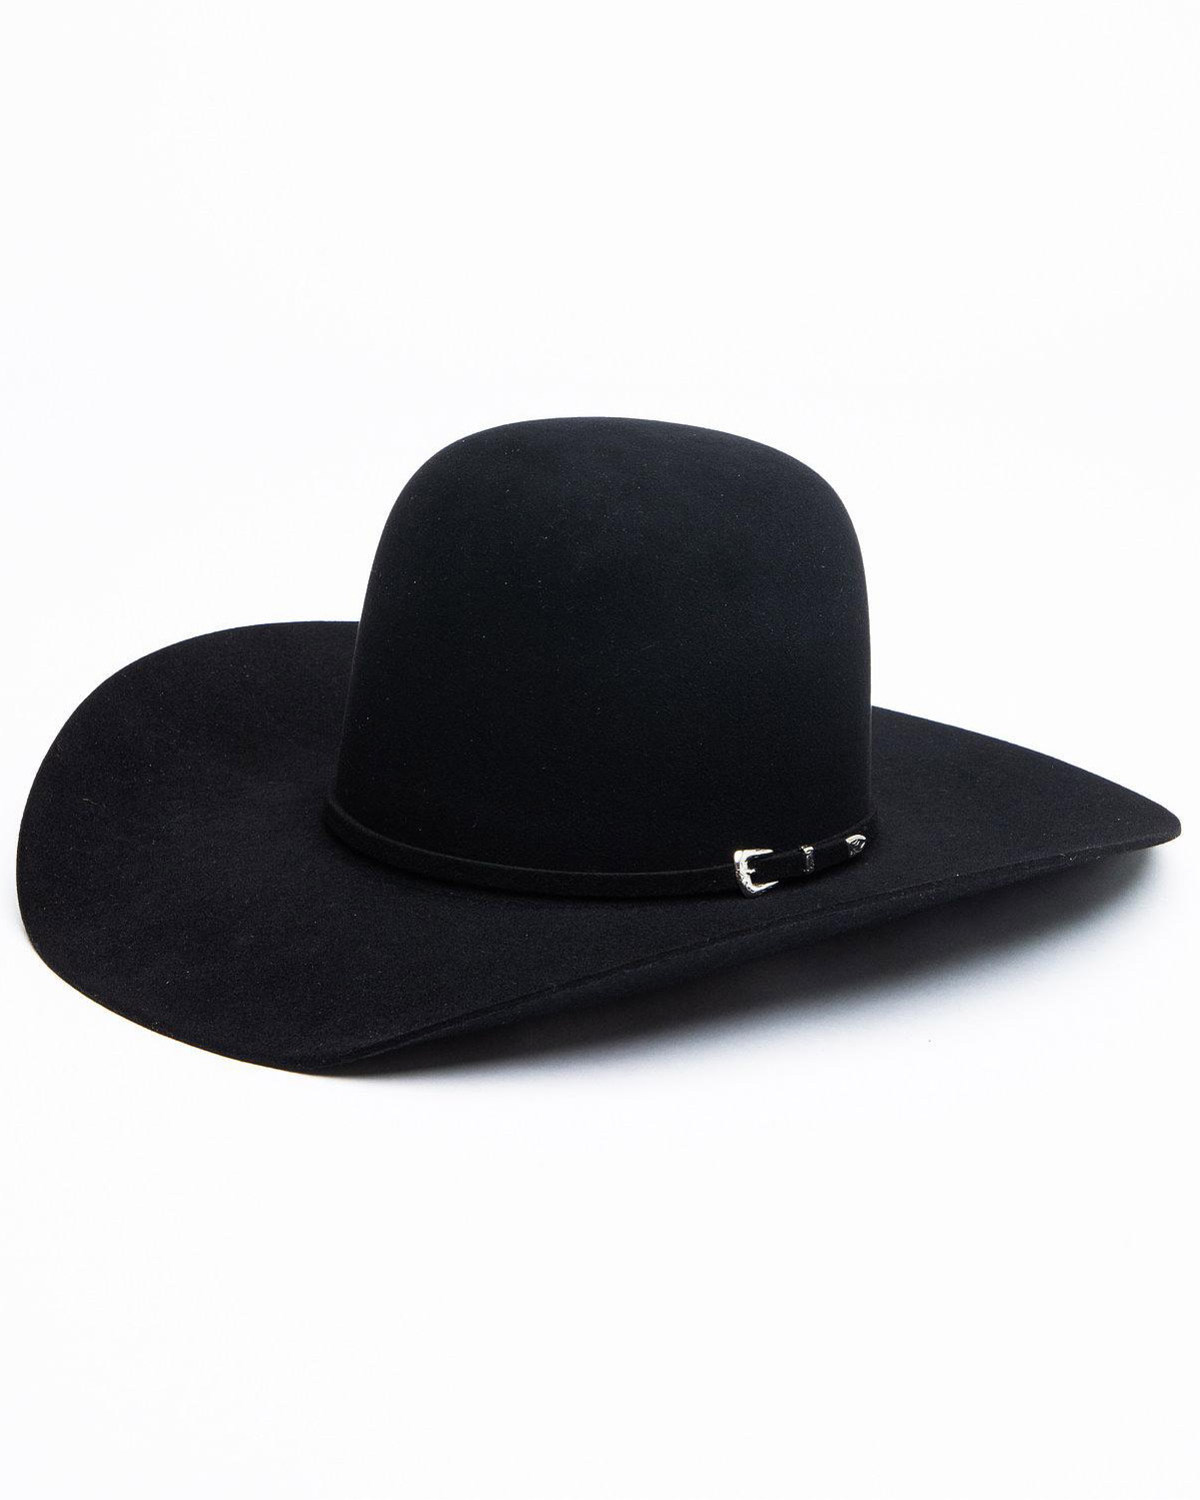 Rodeo King Bullrider 5X Felt Cowboy Hat